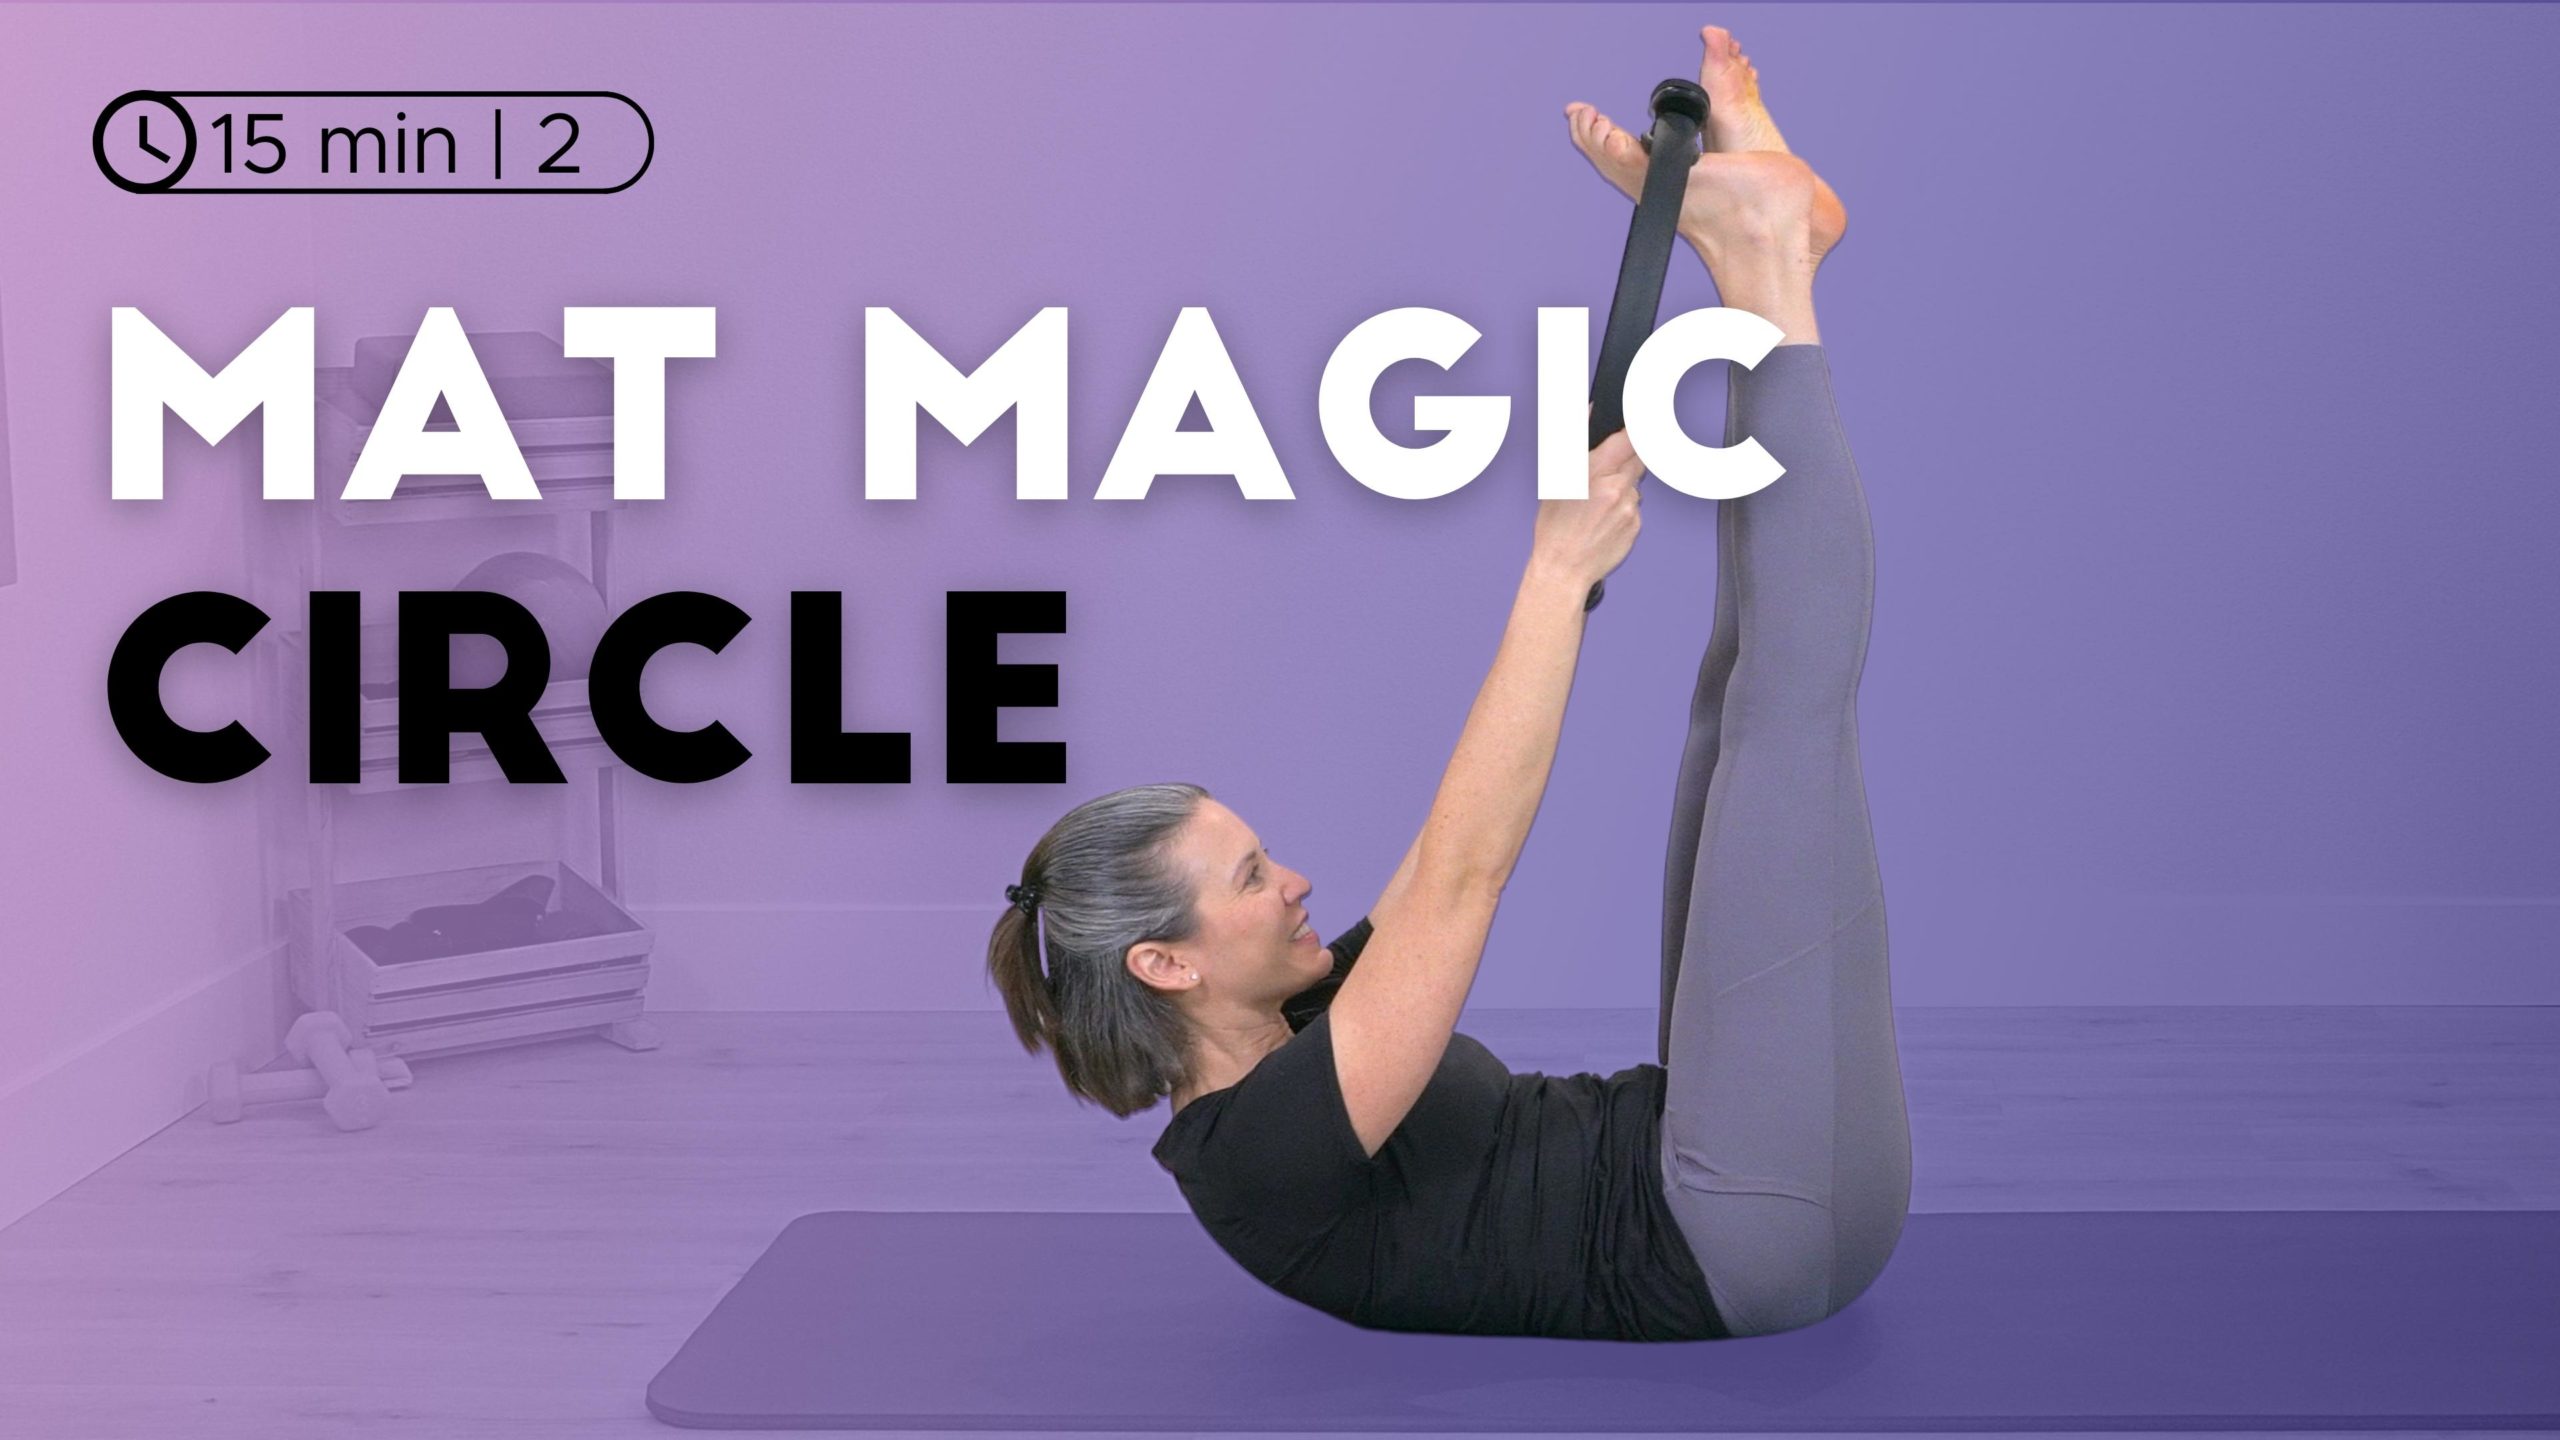 Mat Magic Circle Workout